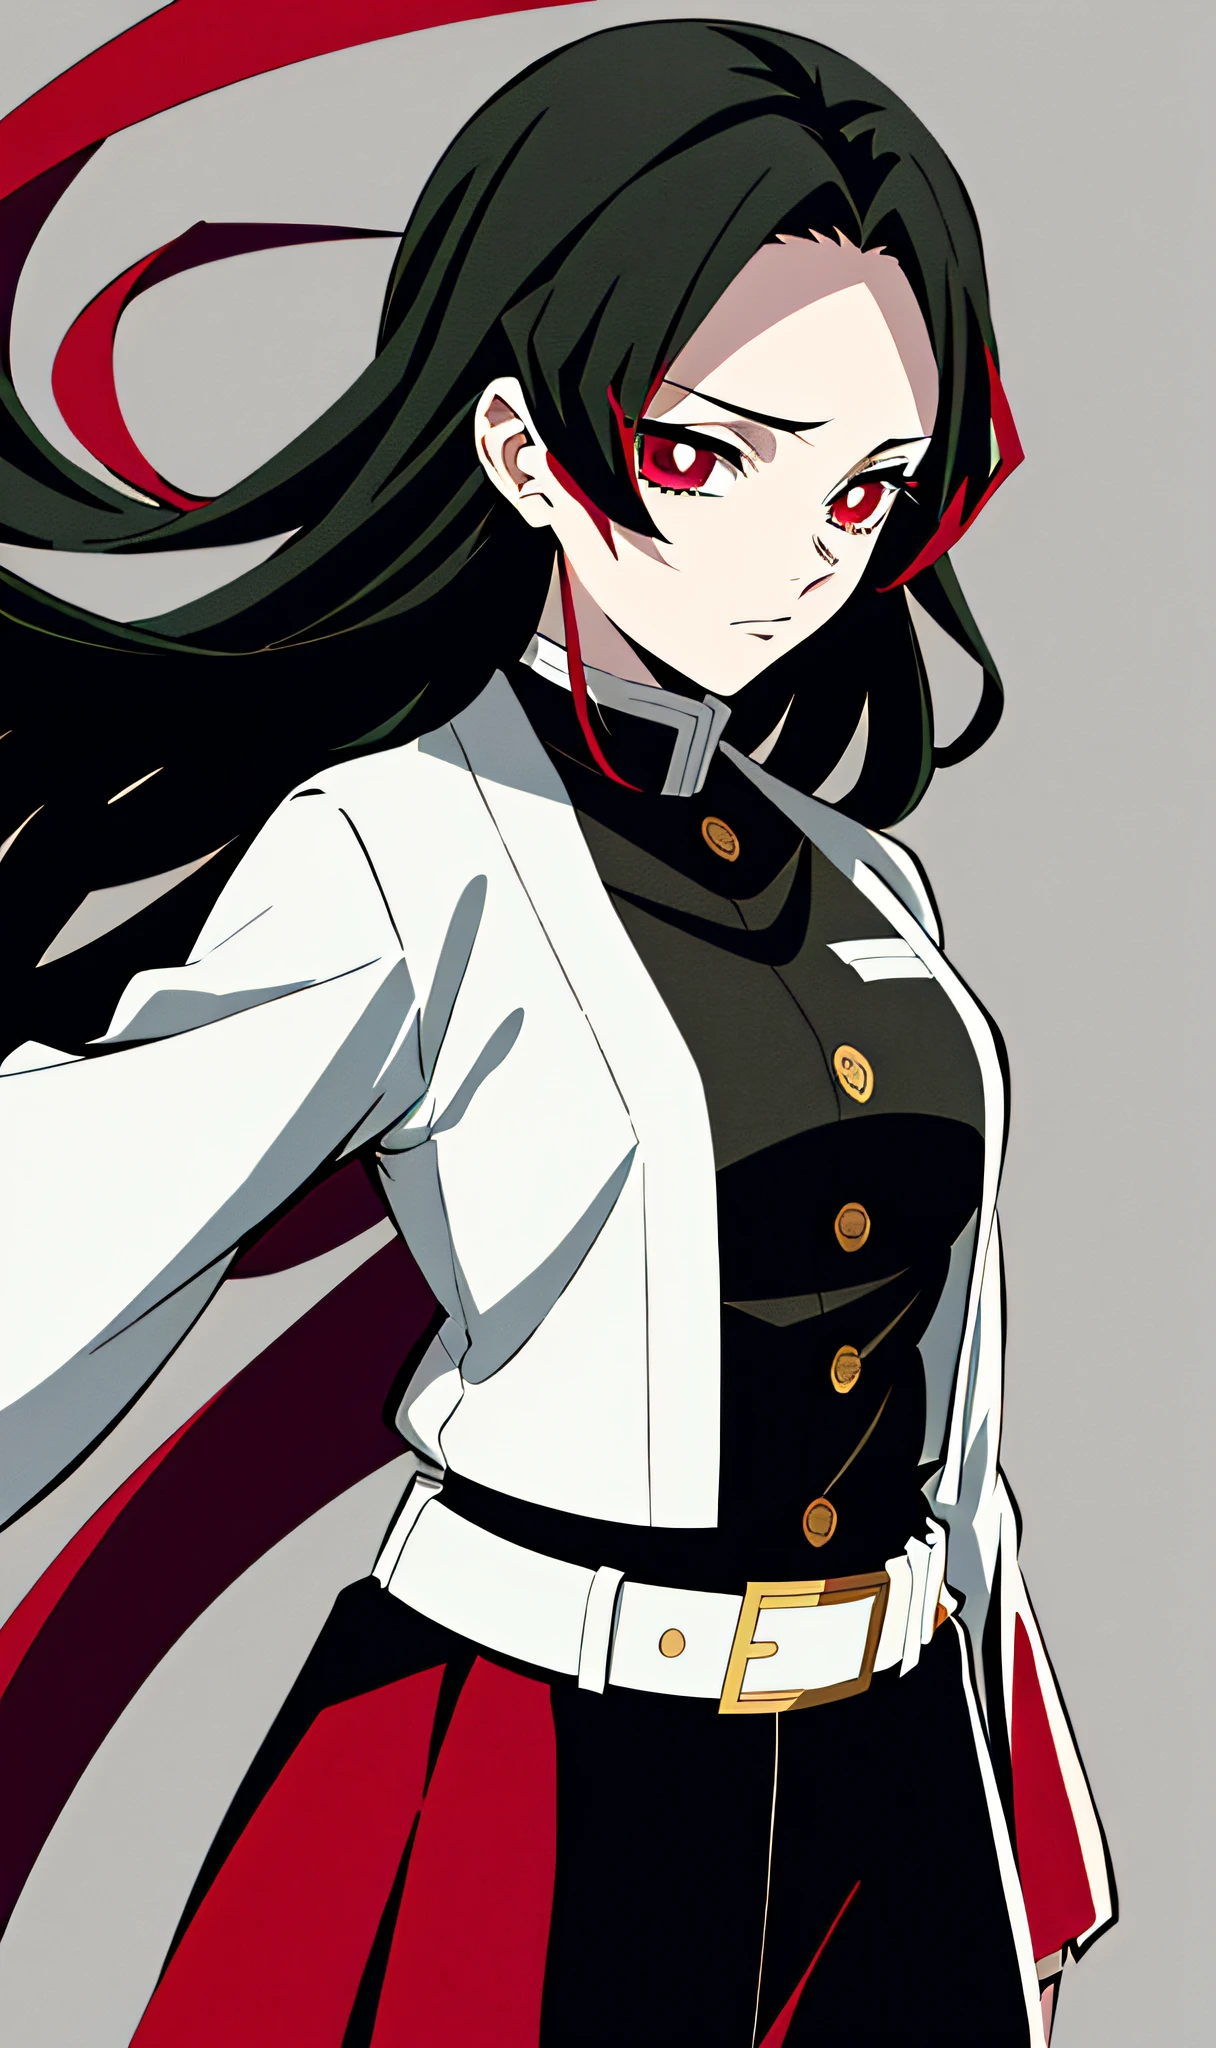 Junges japanisches Mädchen im Kimetsu no Yaiba-Stil, welliges schwarzes Haar mit roten Spitzen, schwarze offene Demon Slayer Uniform mit weißem Unterhemd, white belt, Anime-Färbung, ((Meisterwerk))